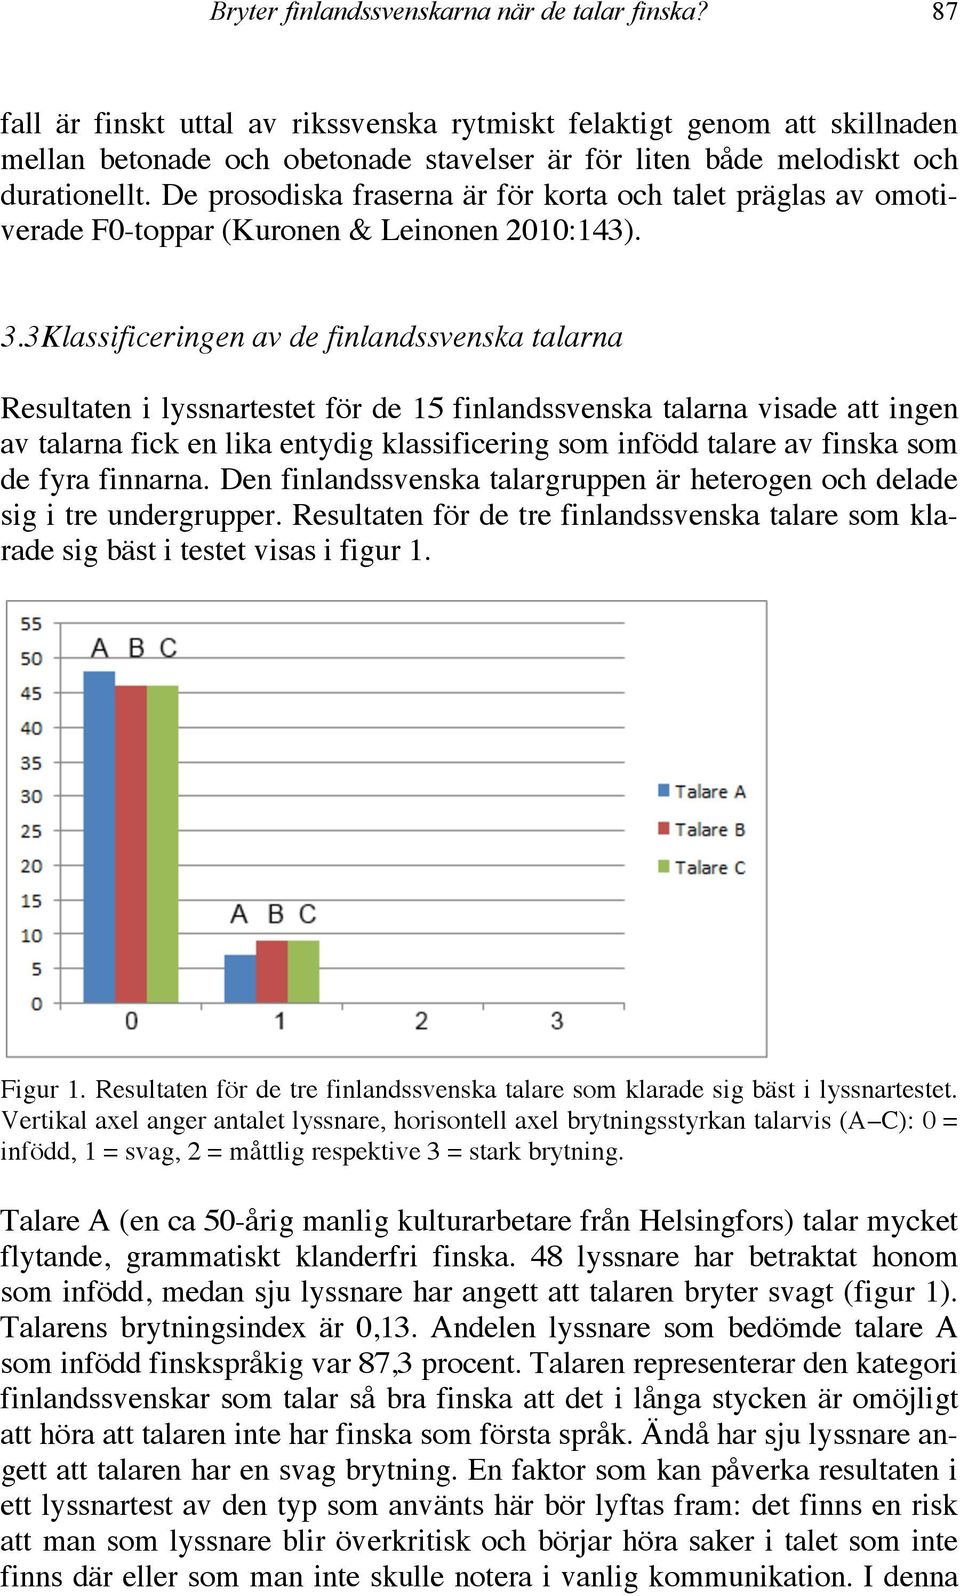 De prosodiska fraserna är för korta och talet präglas av omotiverade F0-toppar (Kuronen & Leinonen 2010:143). 3.